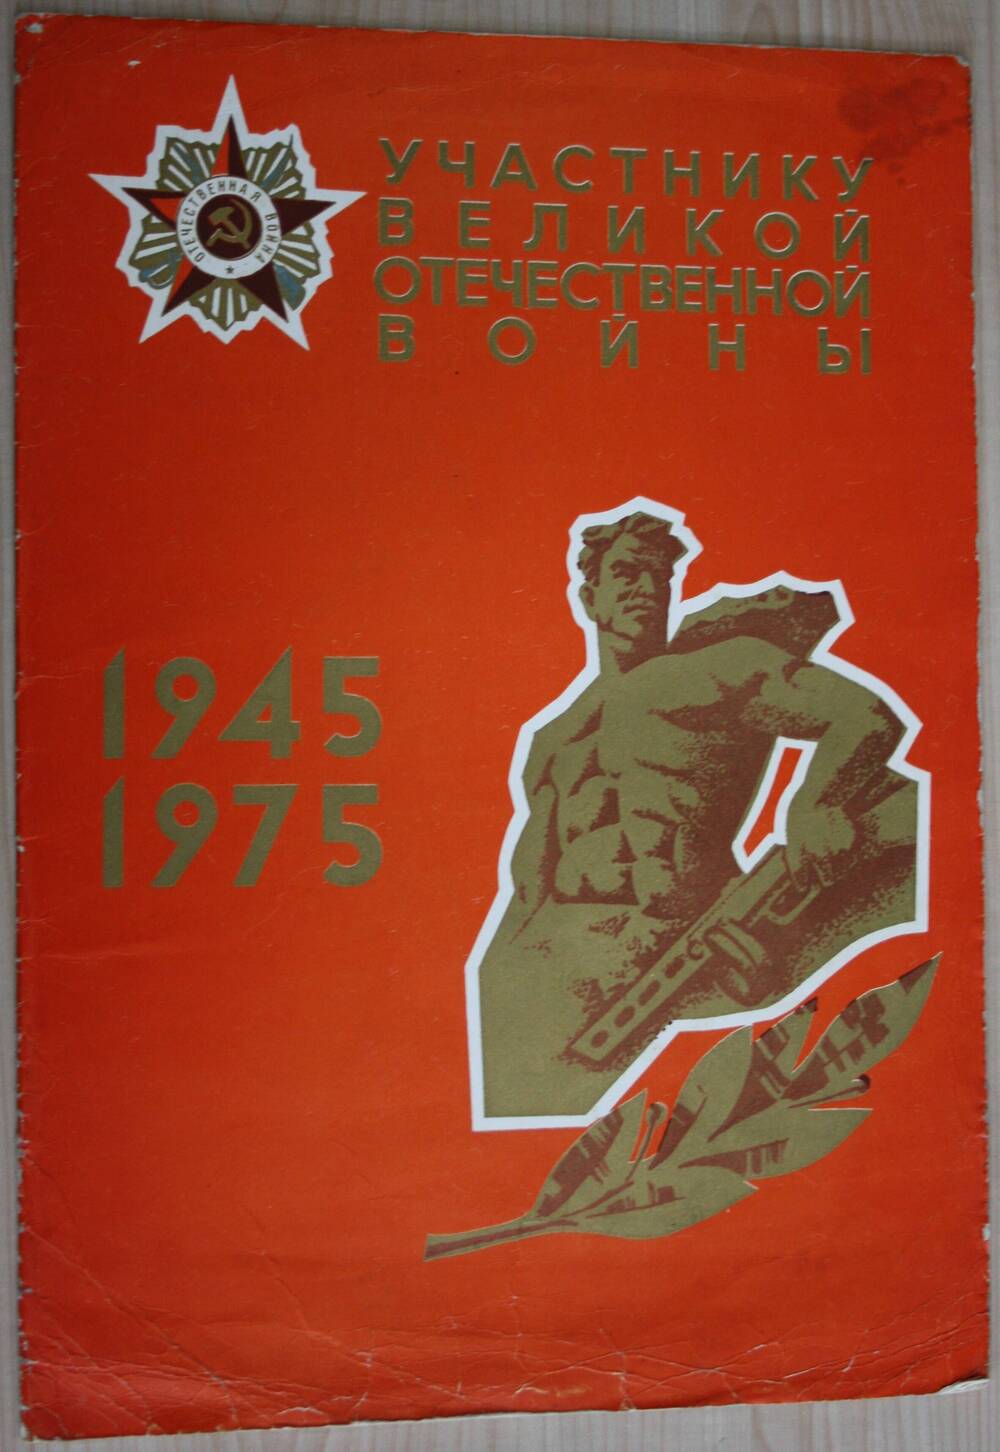 Поздравительный адрес Китришу Н.А. с 30-летием Победы над фашистской Германией от управления Омскцелинстрой